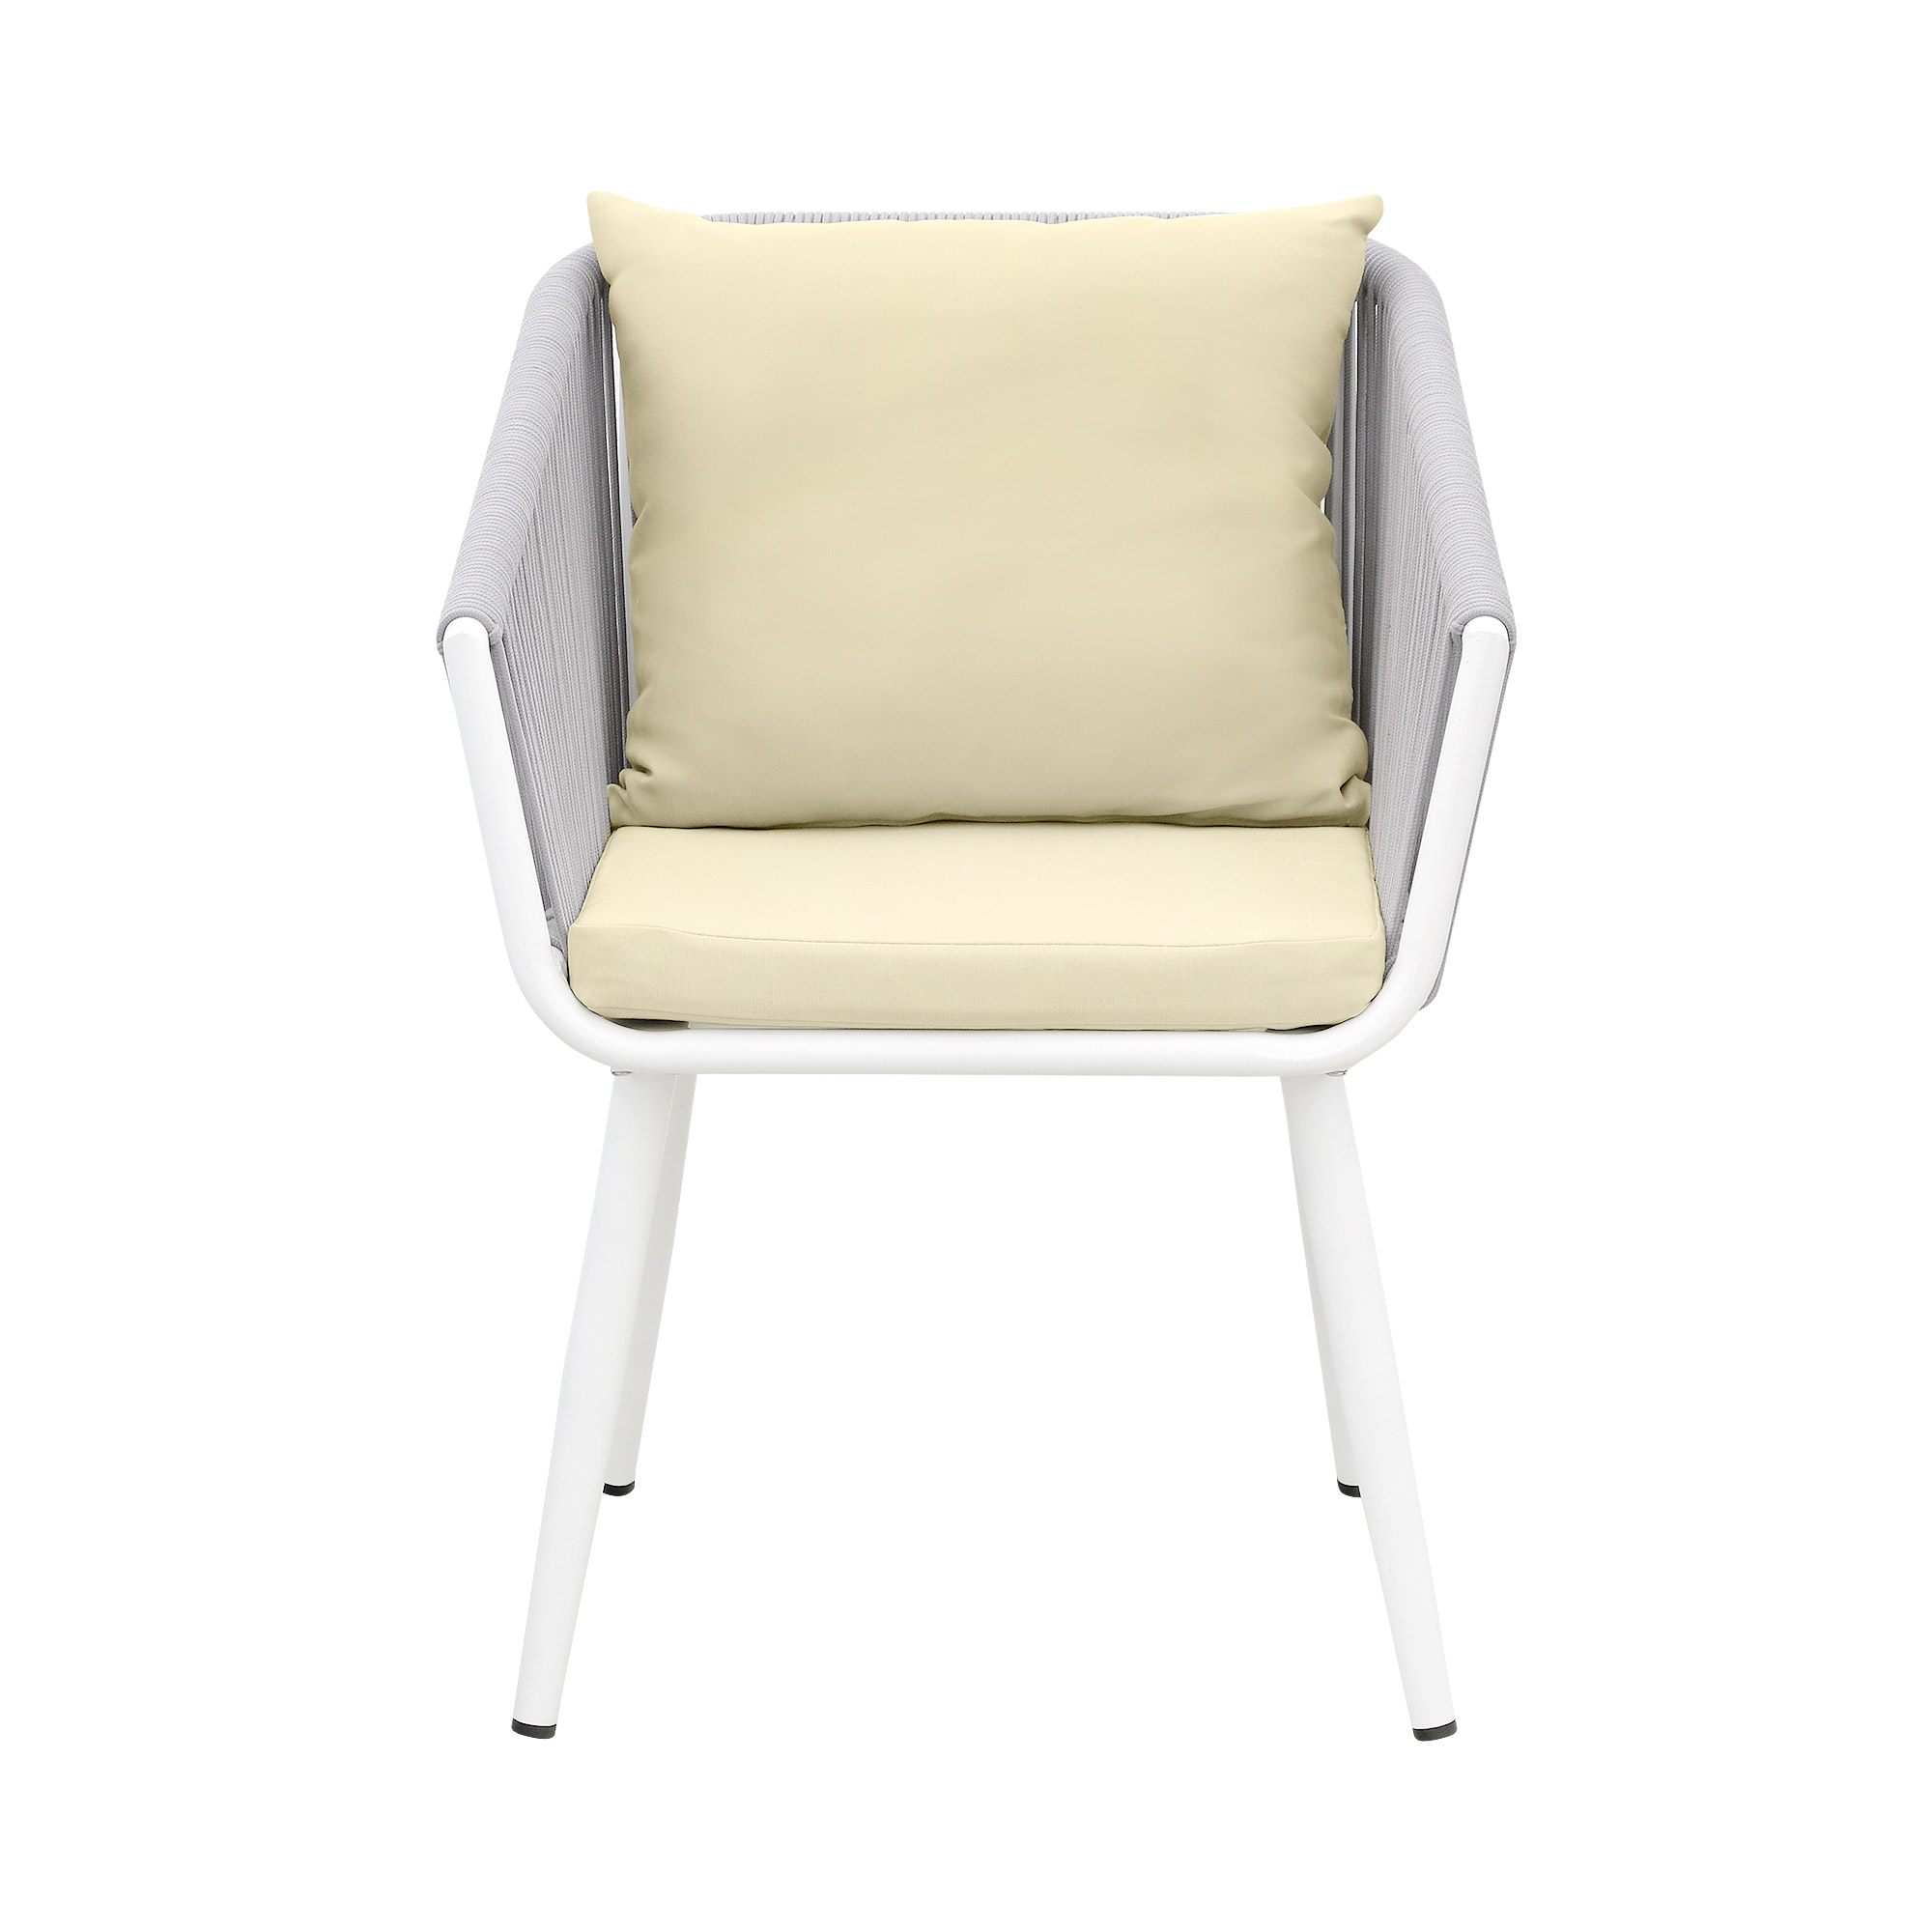 Комплект мебели Obt light 2 кресла+столик, цвет белый, размер 59х64х78 см - фото 4